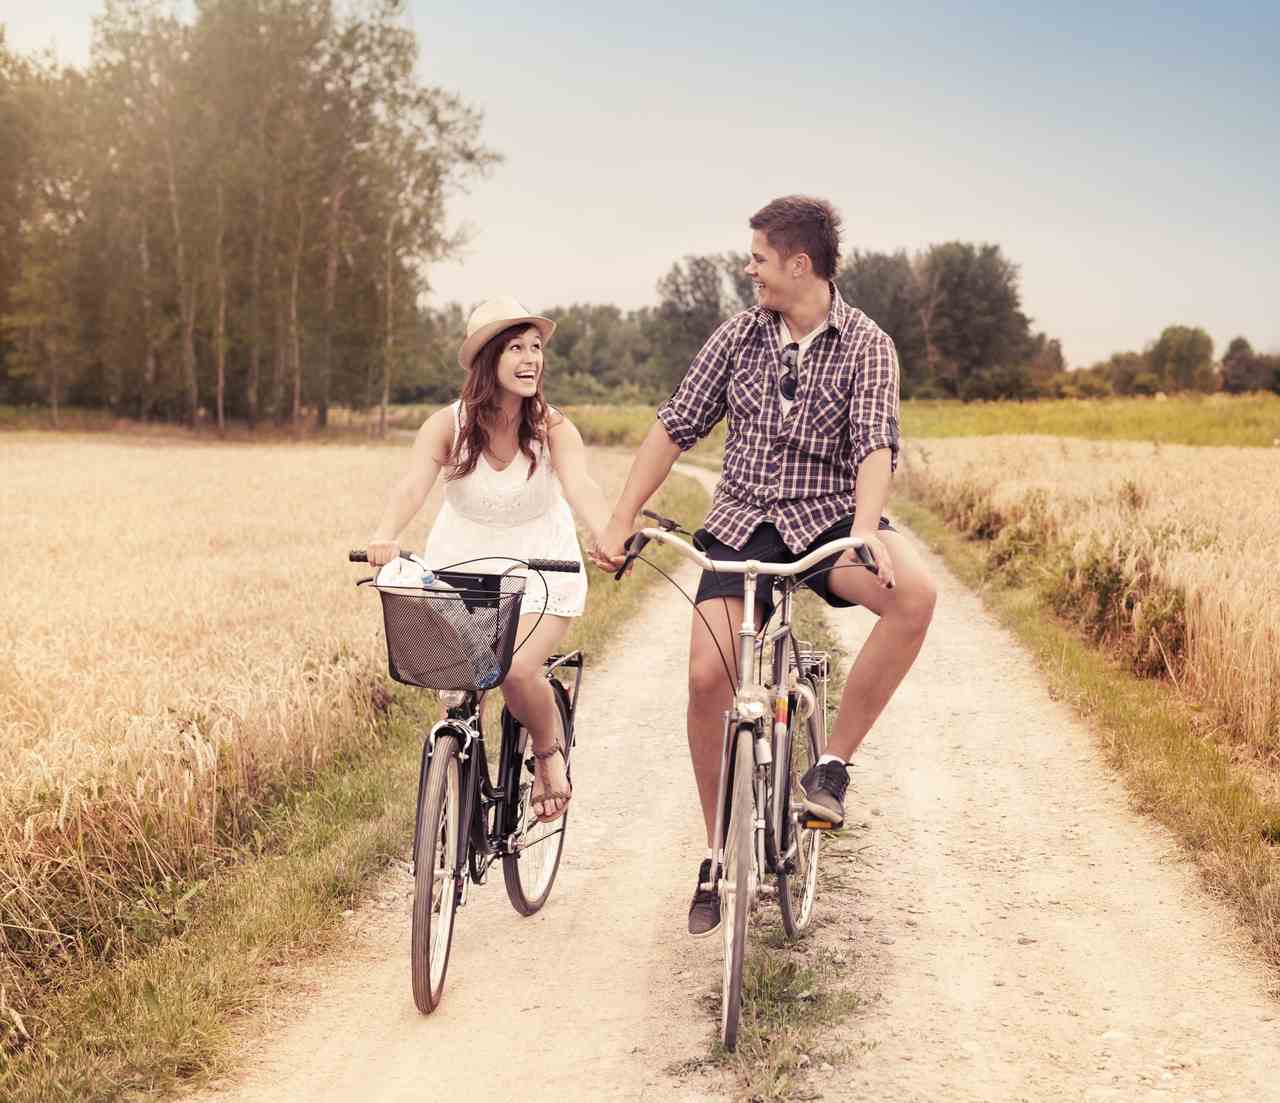 Bisiklet ile giderken ele ele tutuşan çift